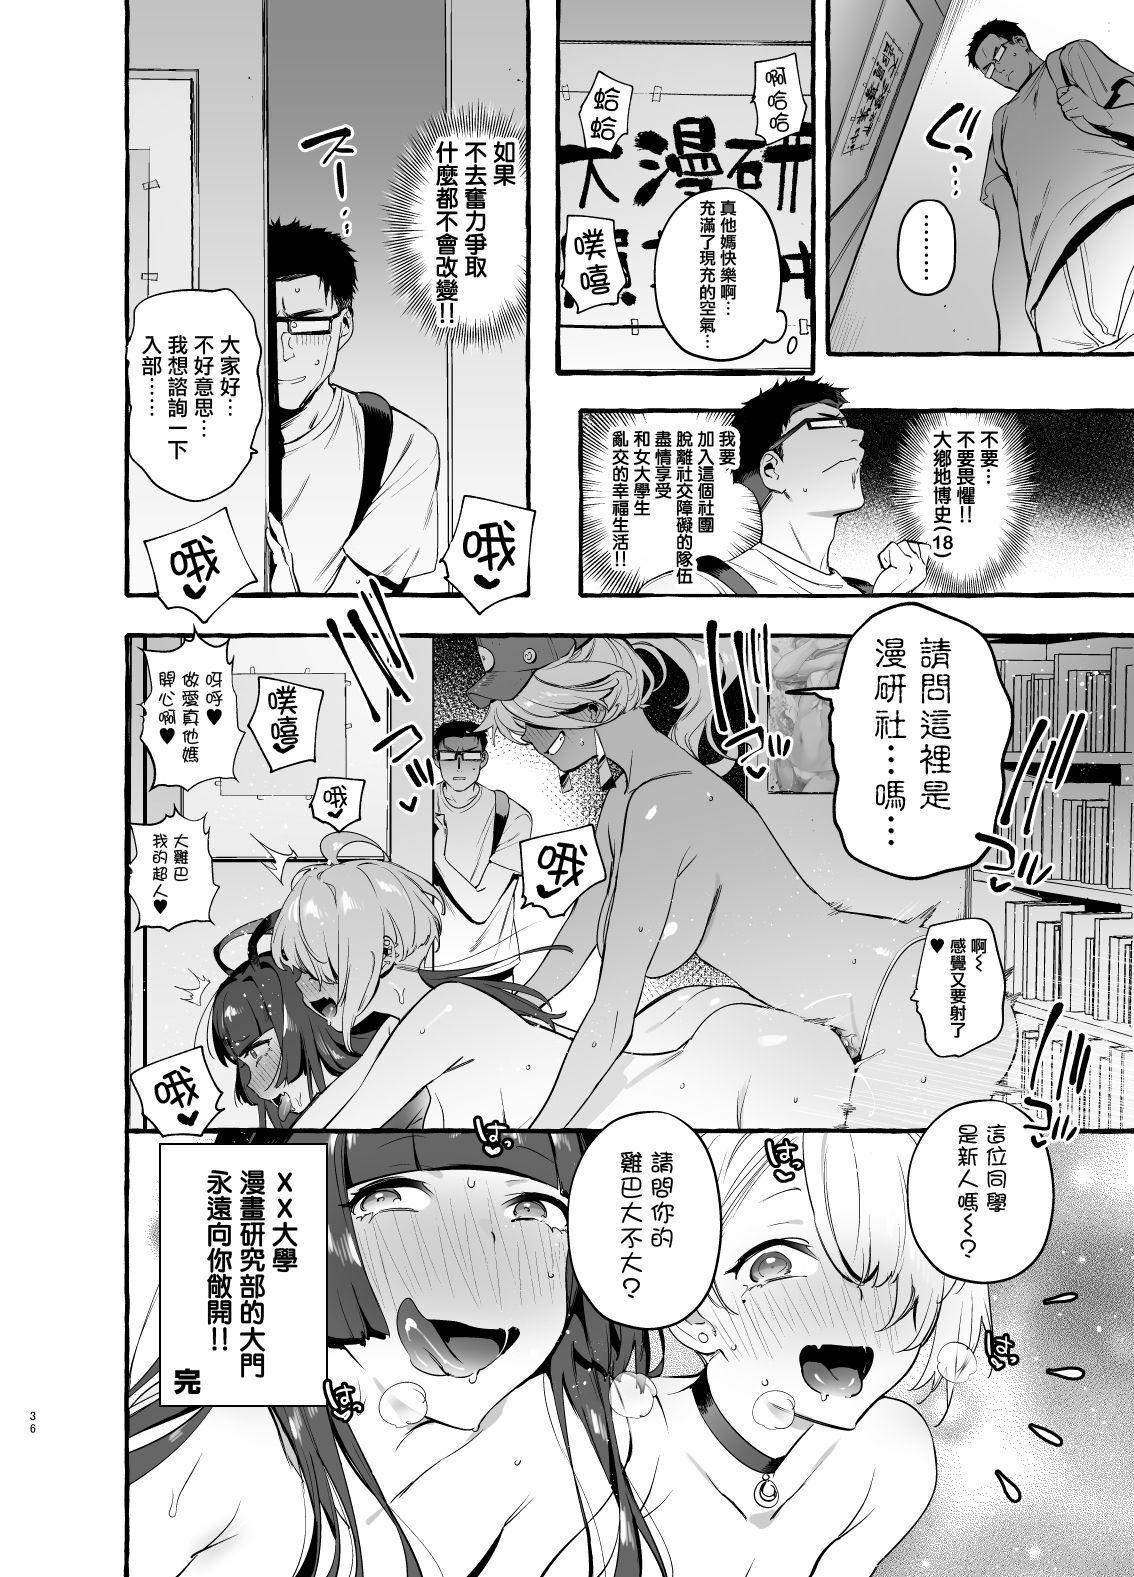 Grandma OtaCir no KuroGal VS Bokura Gay Cut - Page 38